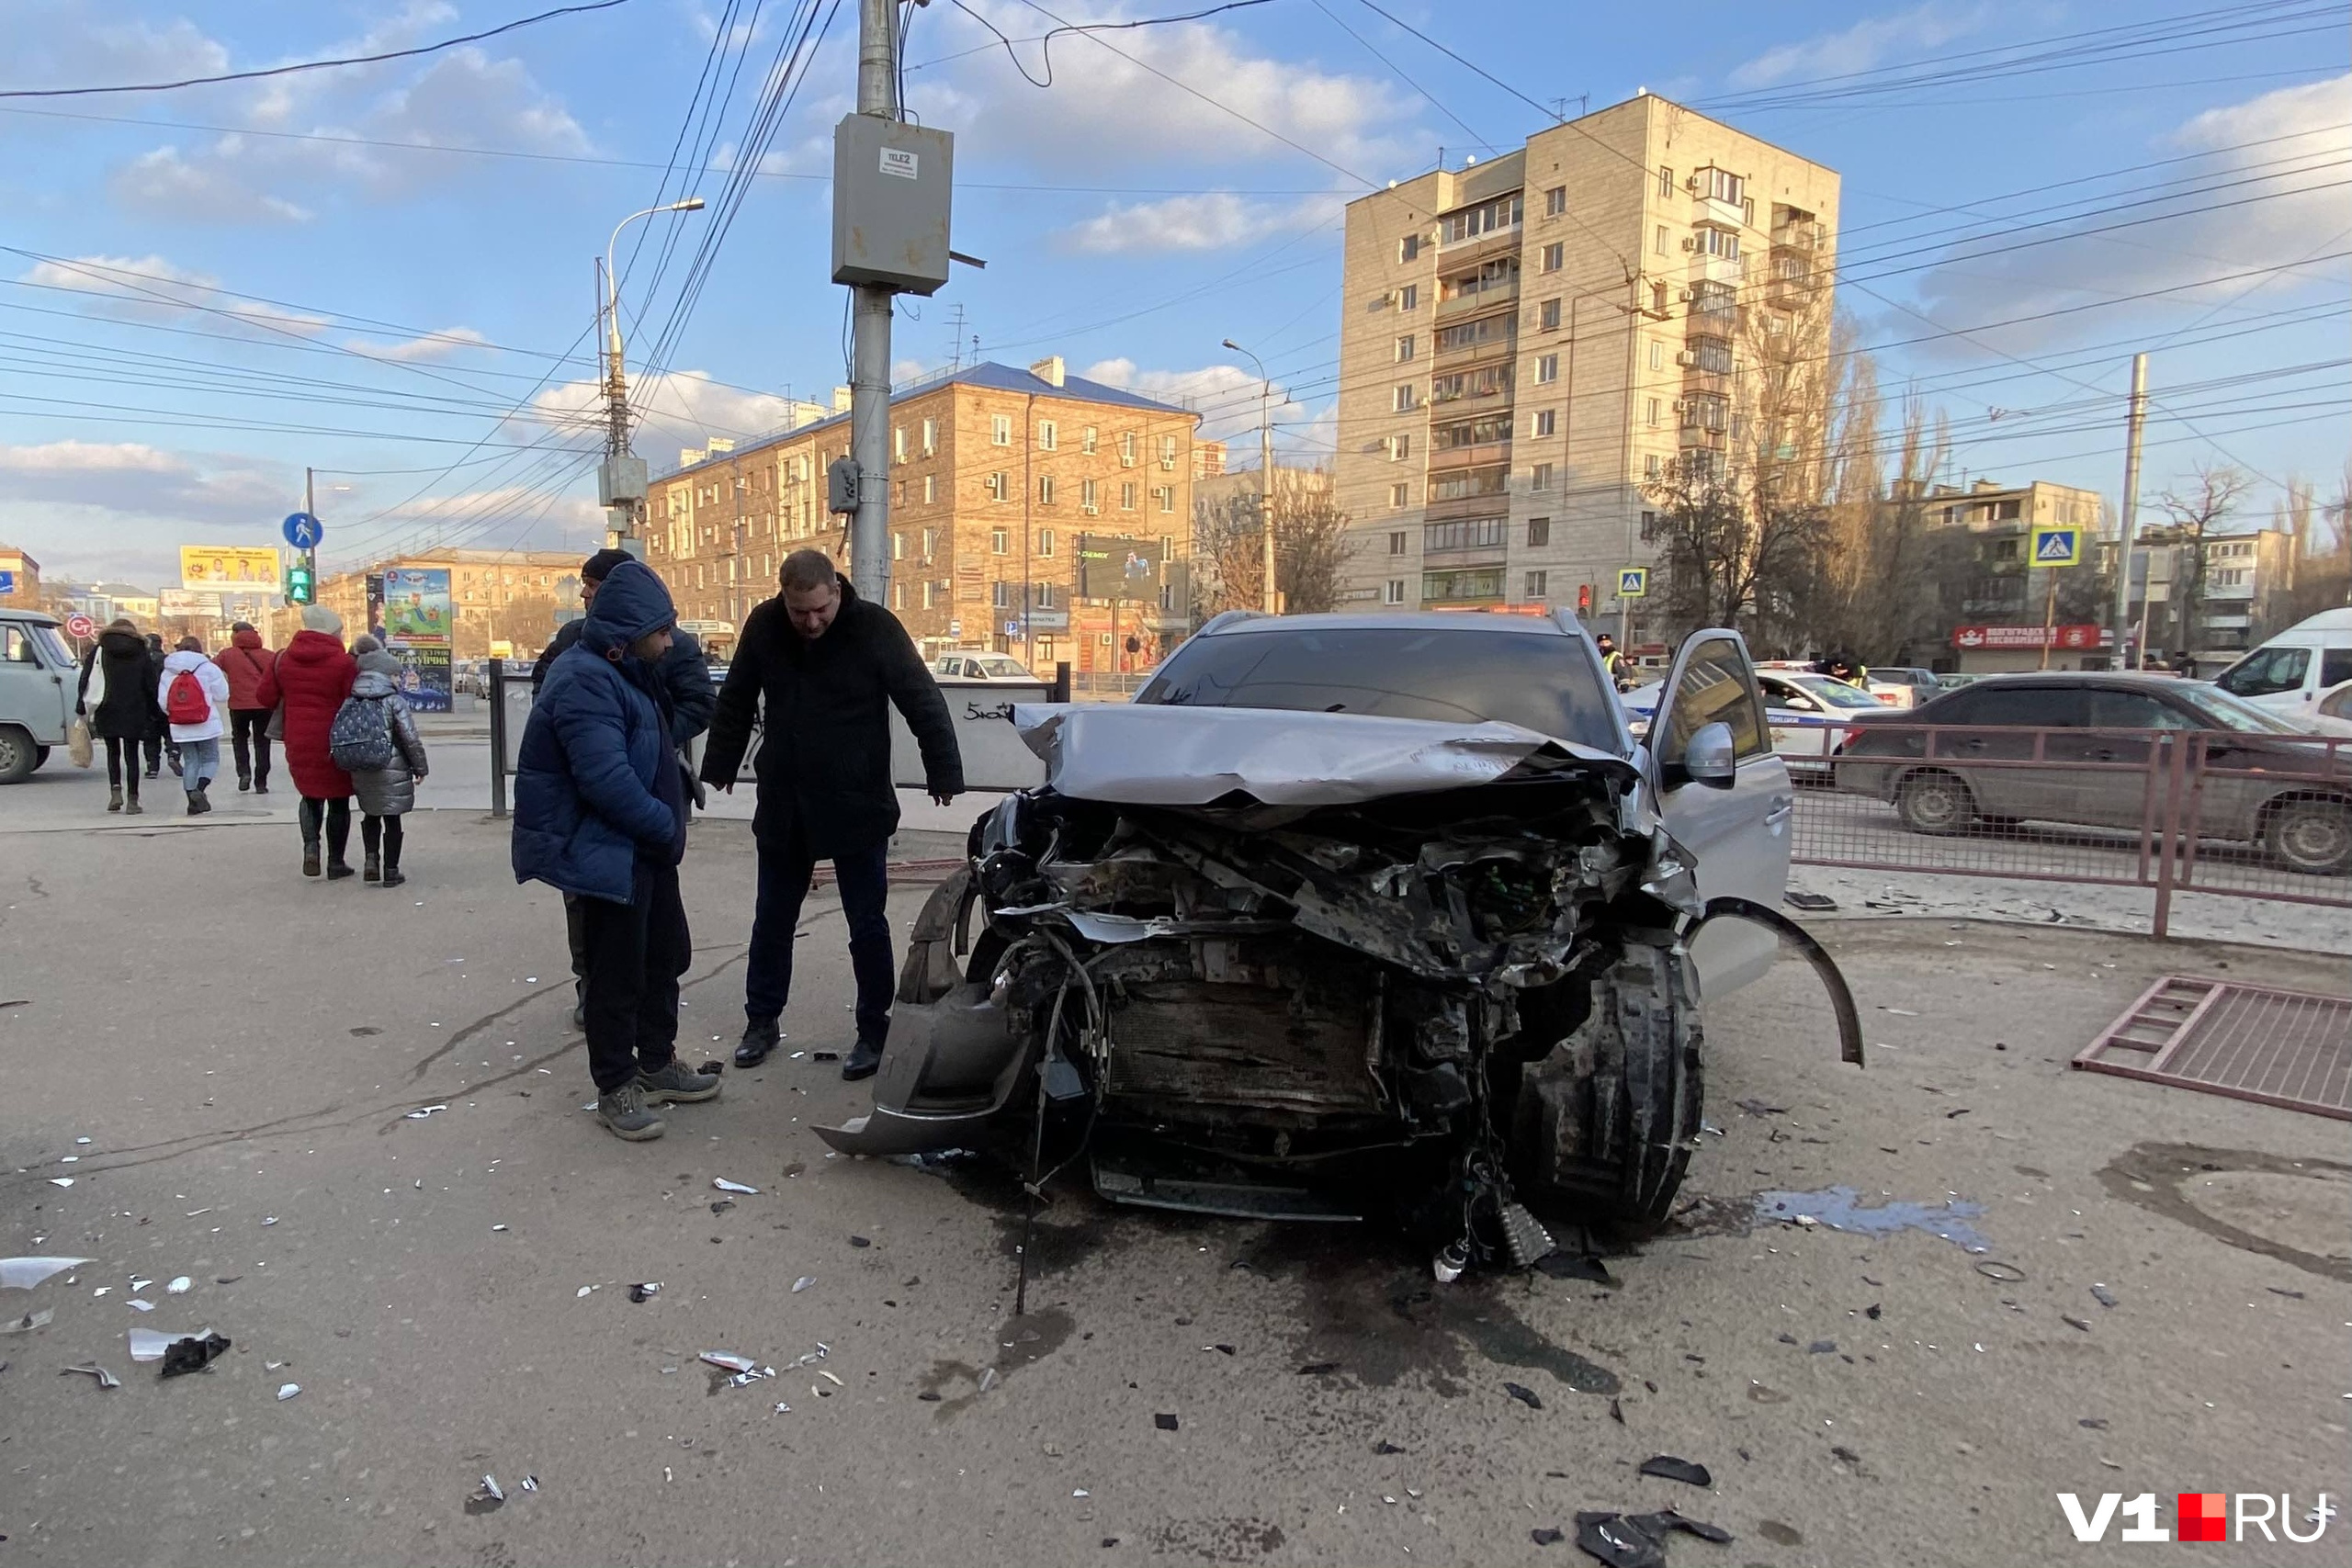 Срочные новости 1. Серьёзная авария в Дагестане.